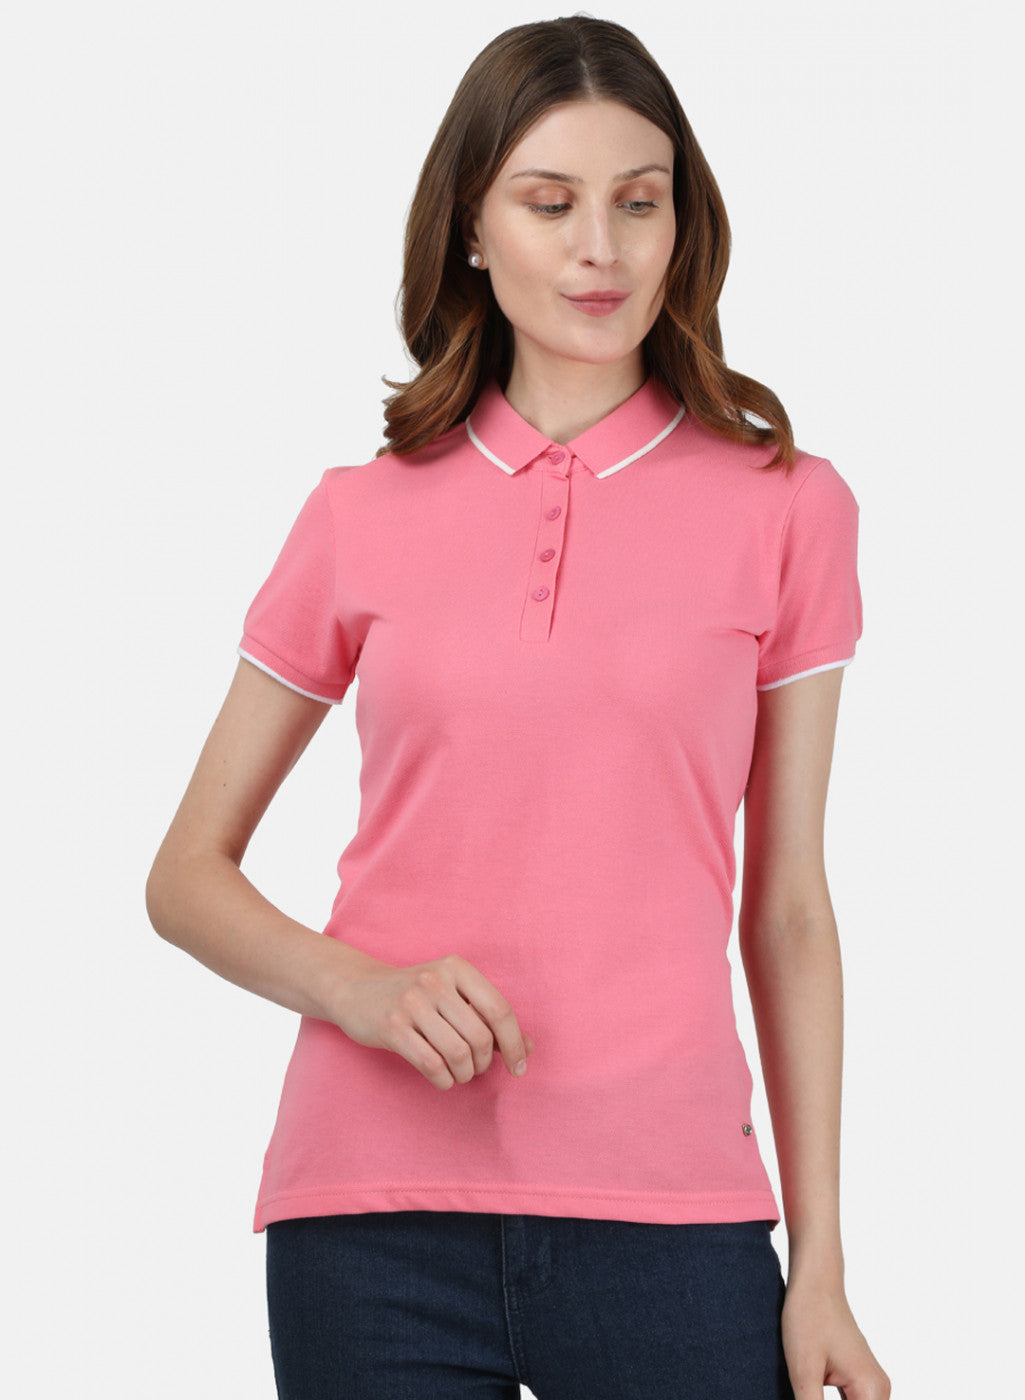 Womens Light Pink Plain T-Shirt